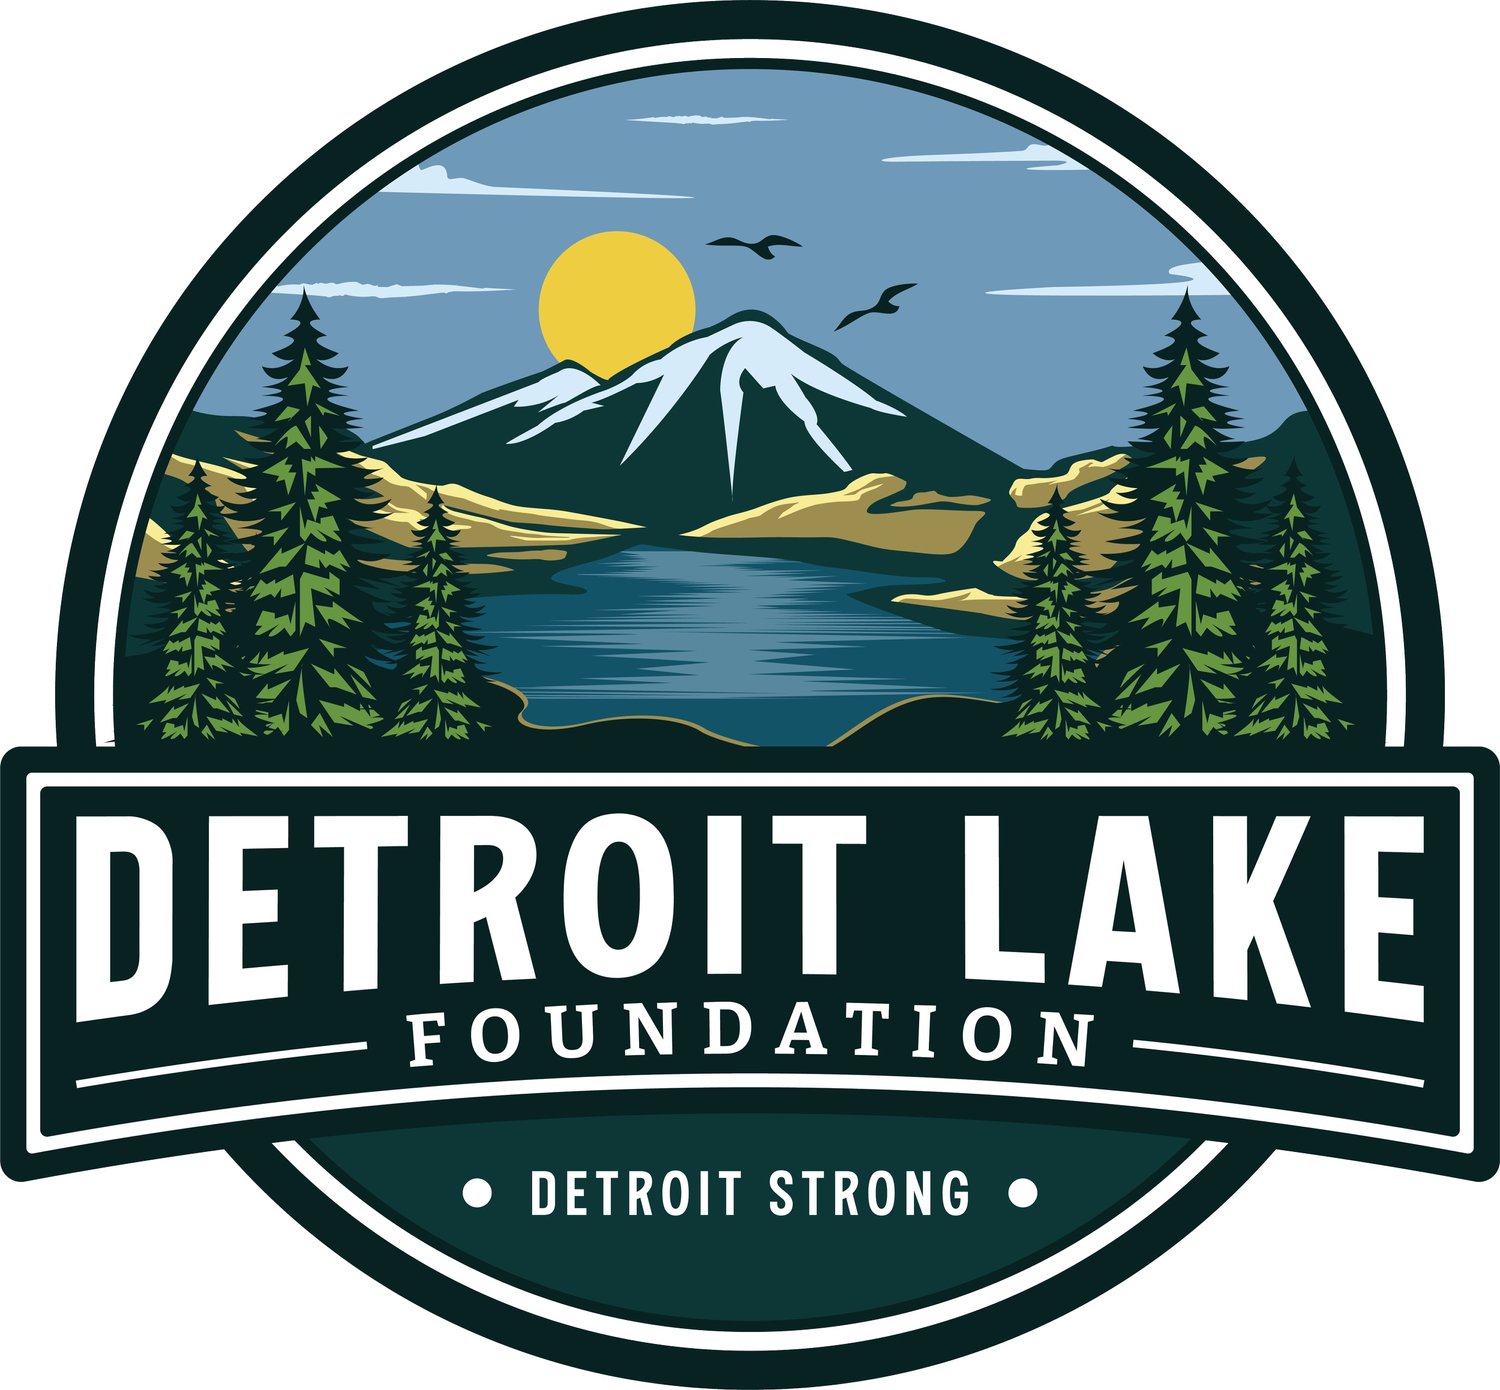 Detroit Lake Foundation